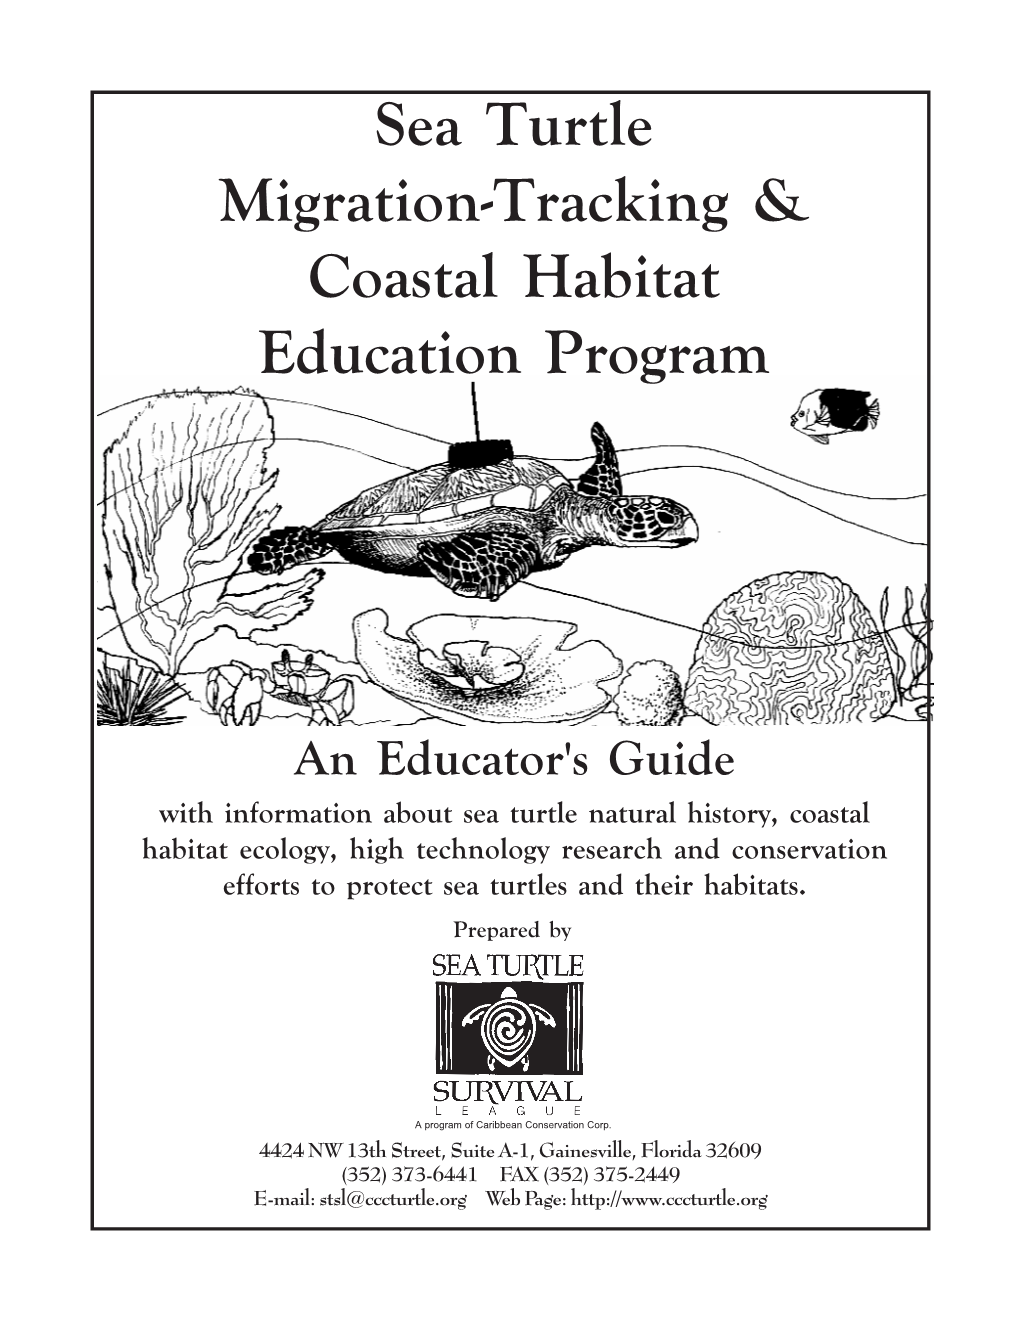 Sea Turtle Migration-Tracking & Coastal Habitat Educators